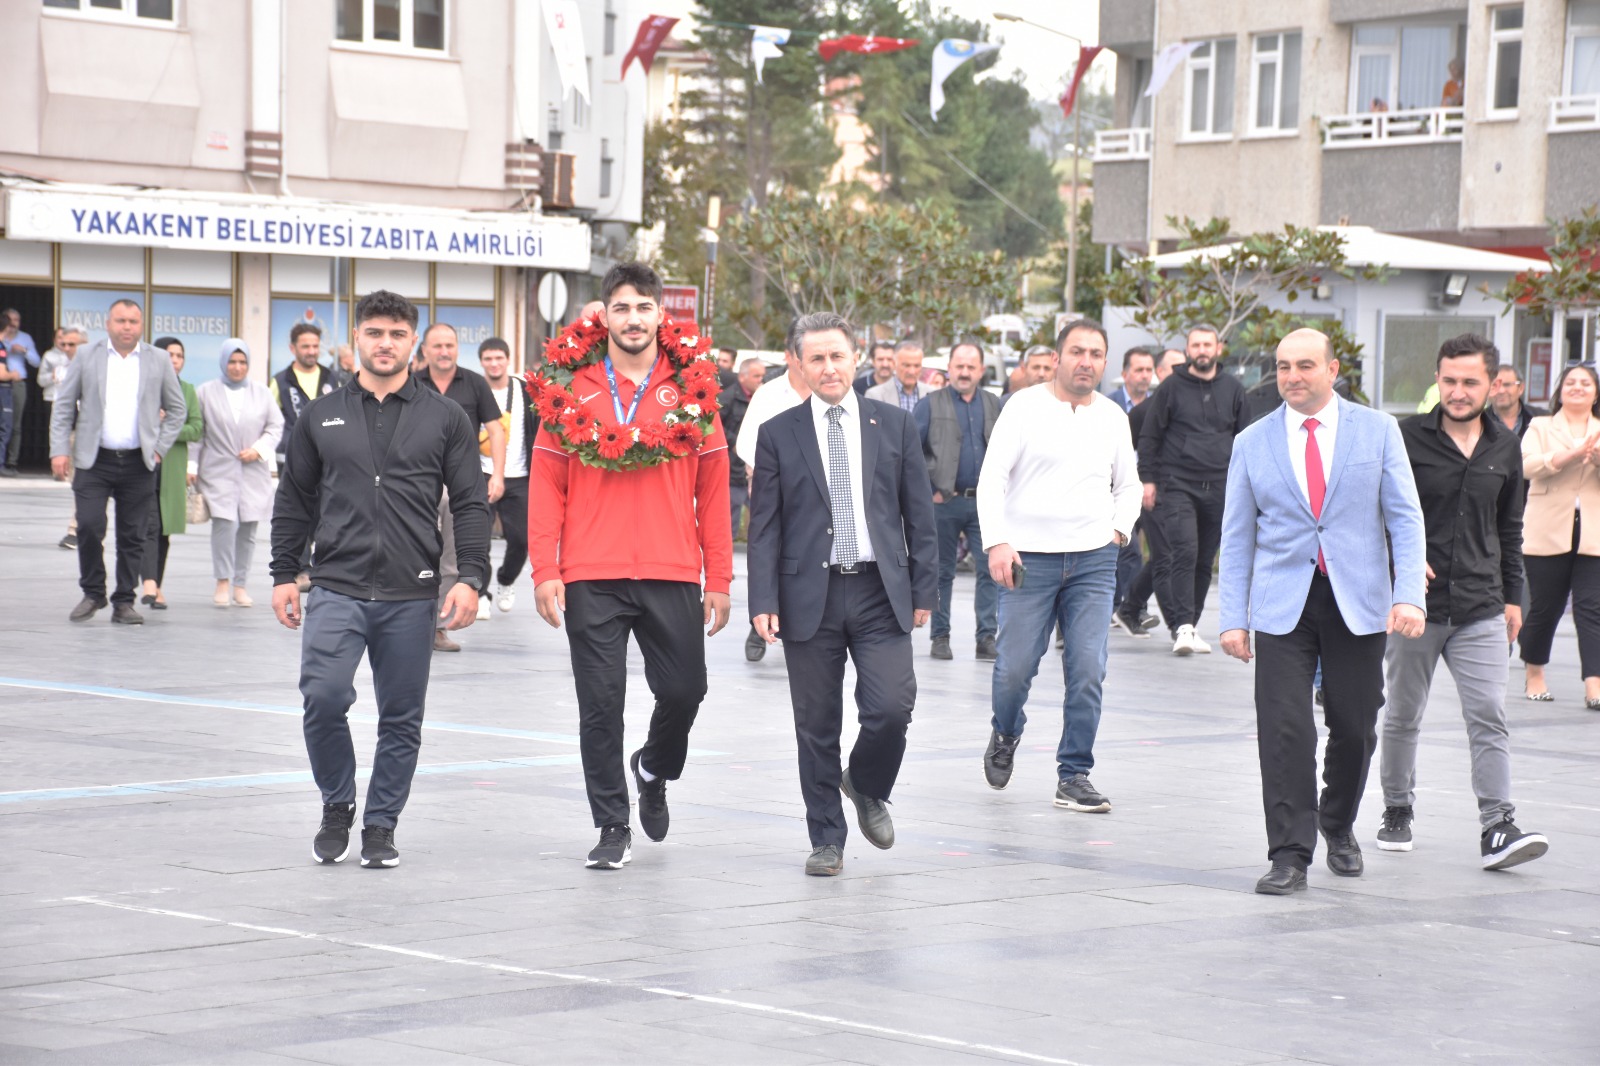 Güreşte Dünya 2. olan Mustafa Olgun Yakakent’te törenle karşılandı